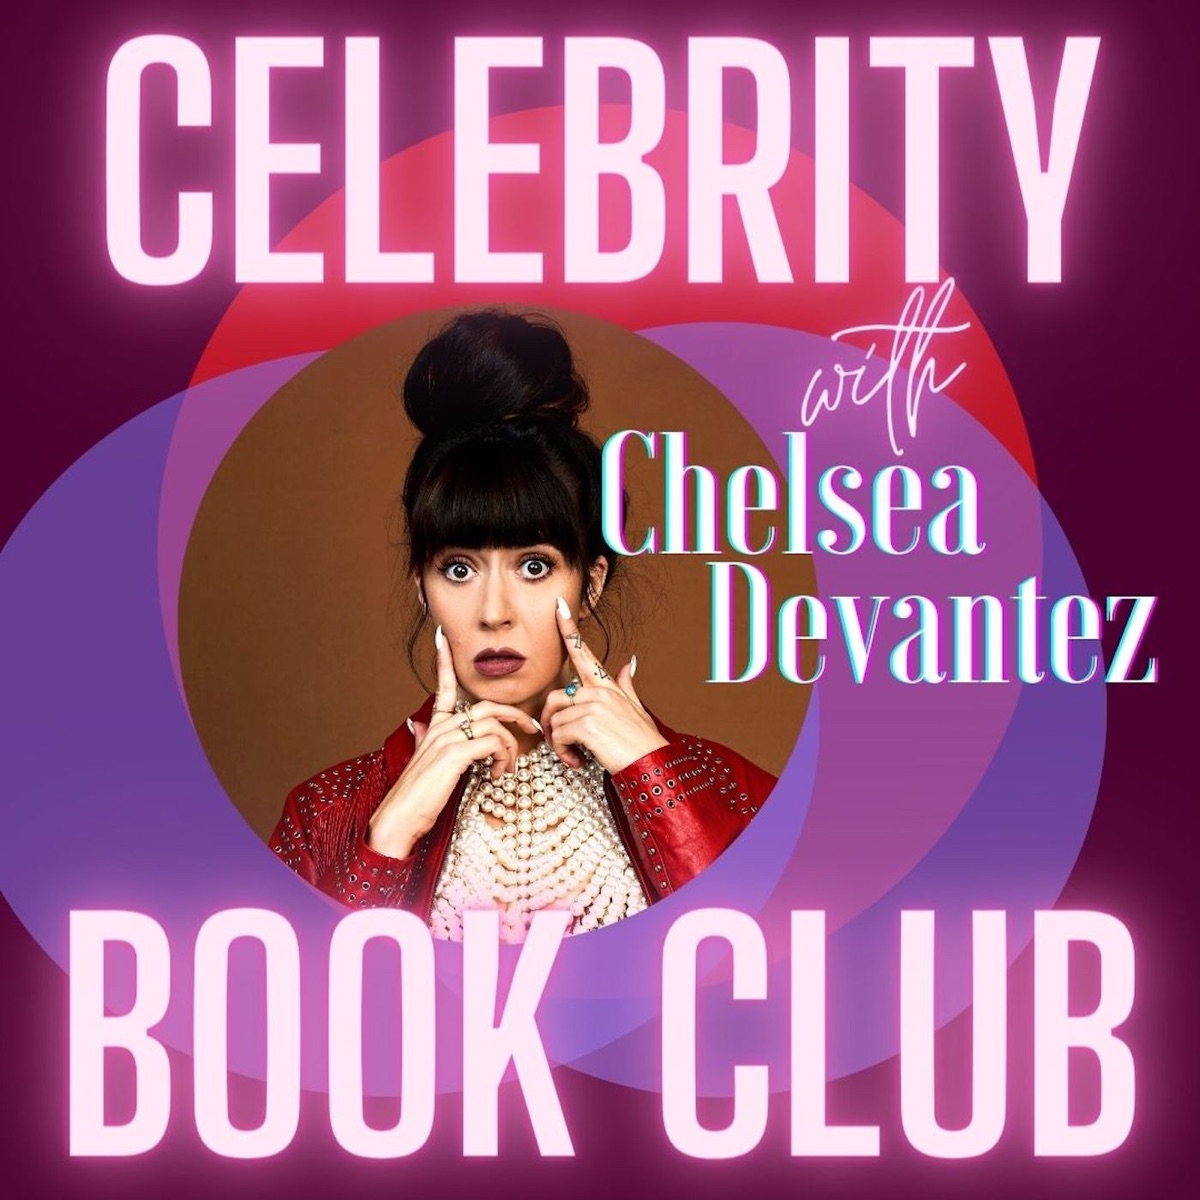 Chelsea Ferguson Bj - Celebrity Book Club with Chelsea Devantez â€“ Podcast â€“ Podtail